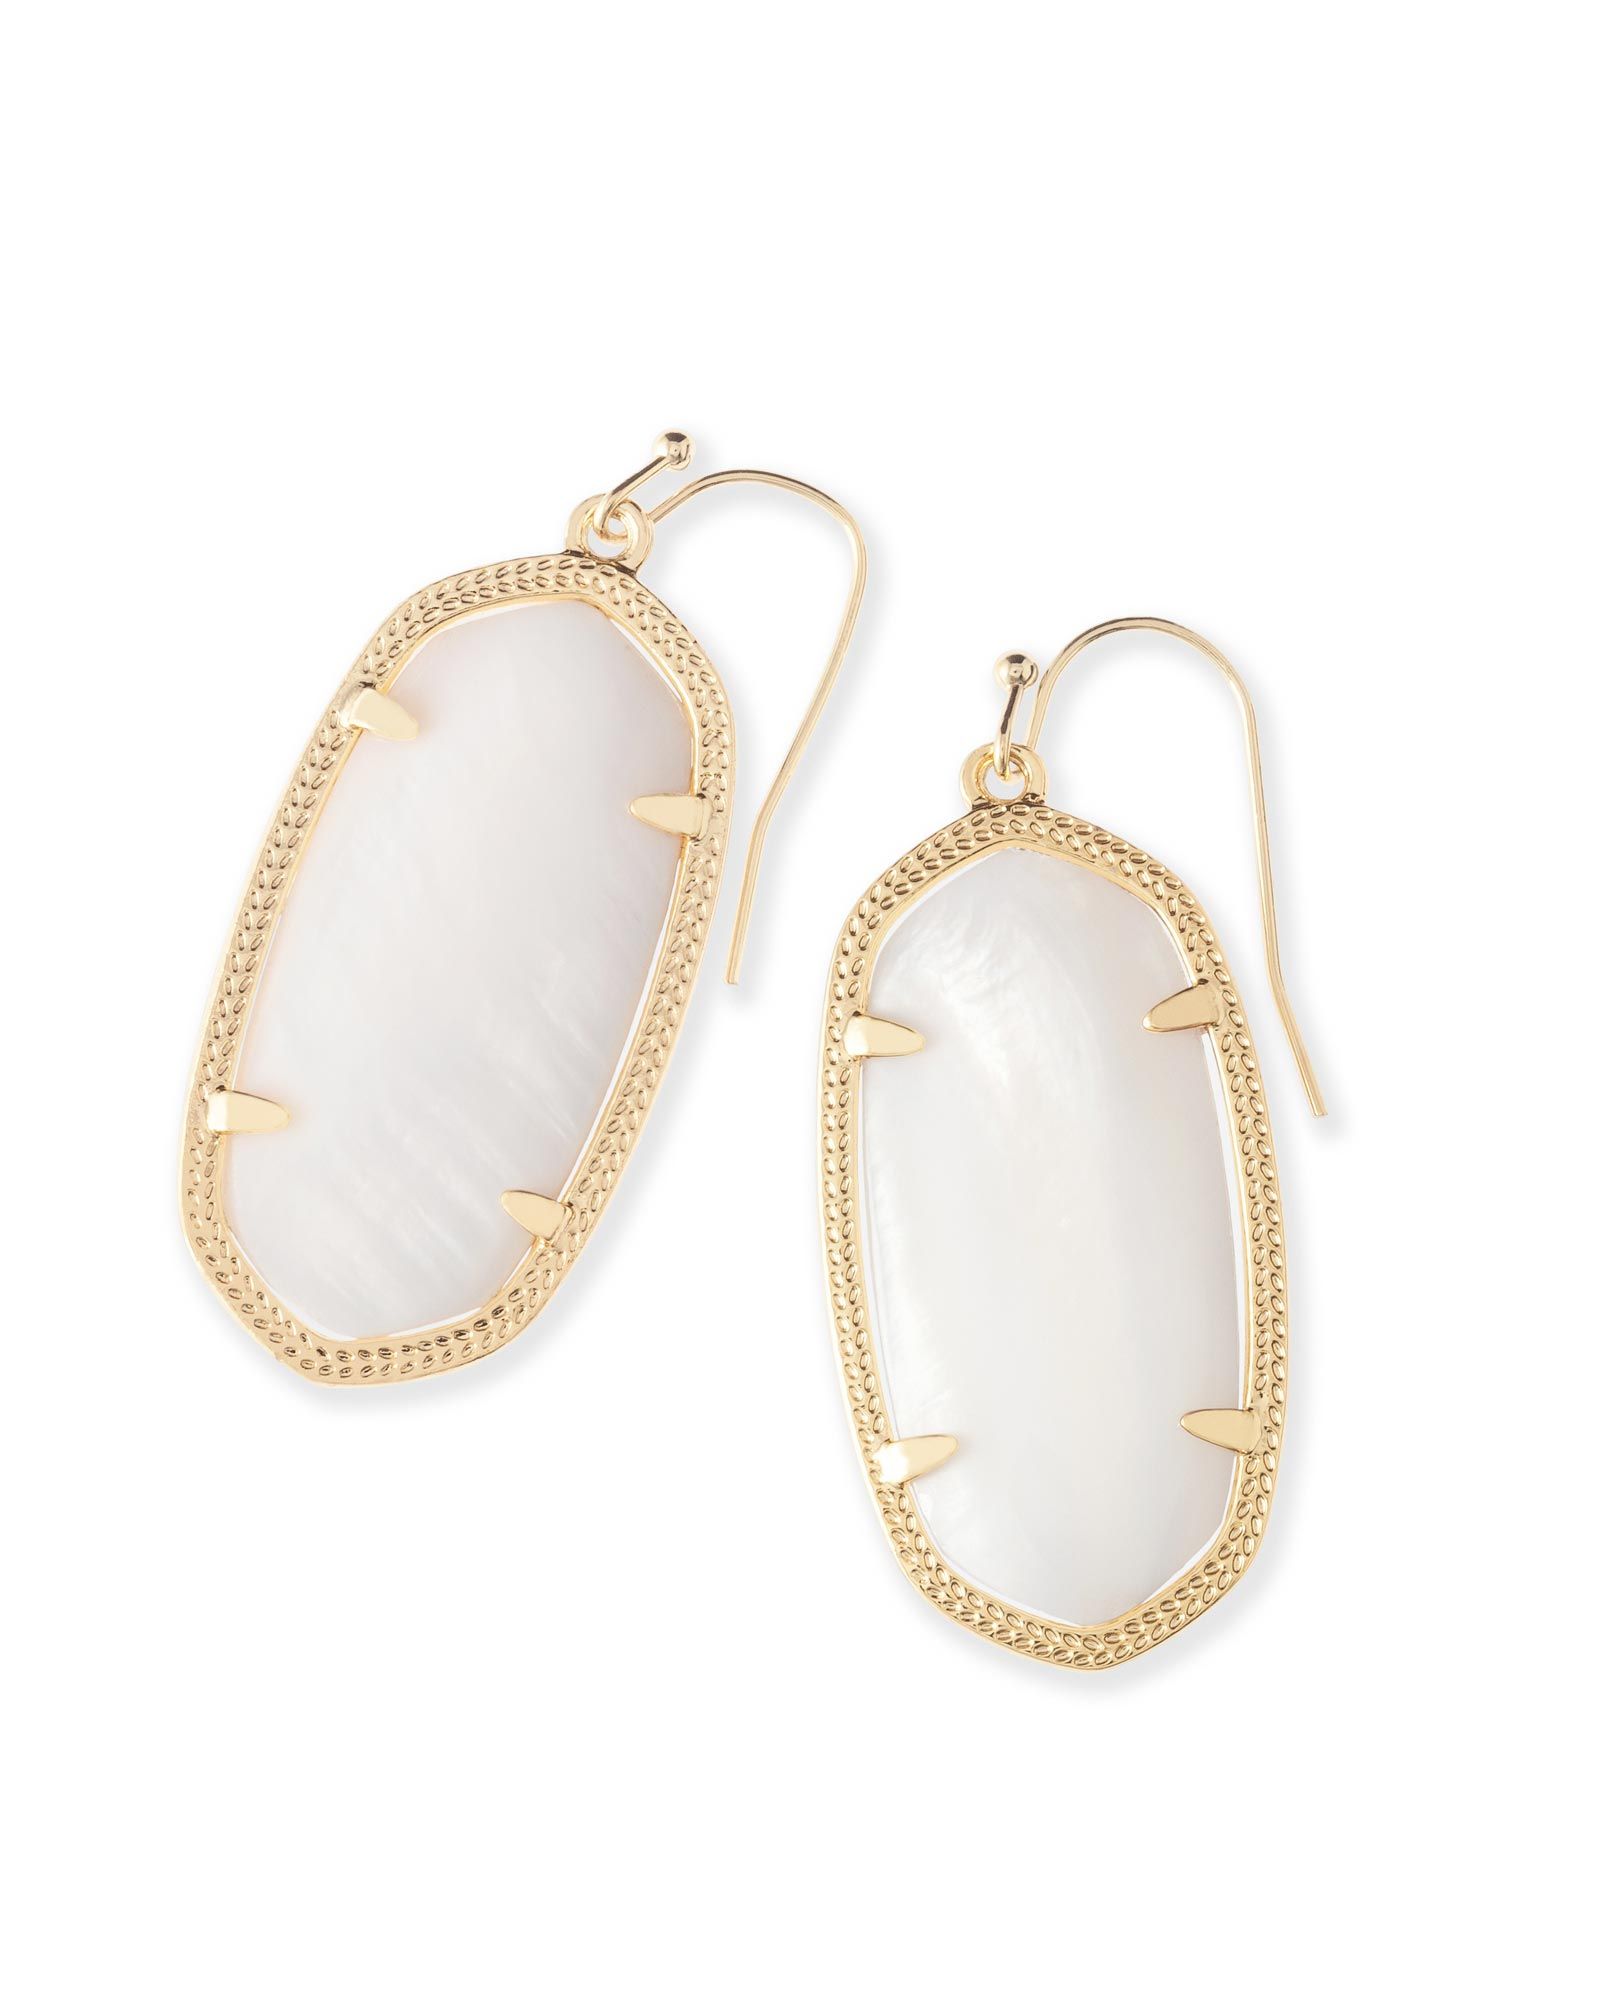 Elle Gold Earrings in White Pearl | Kendra Scott